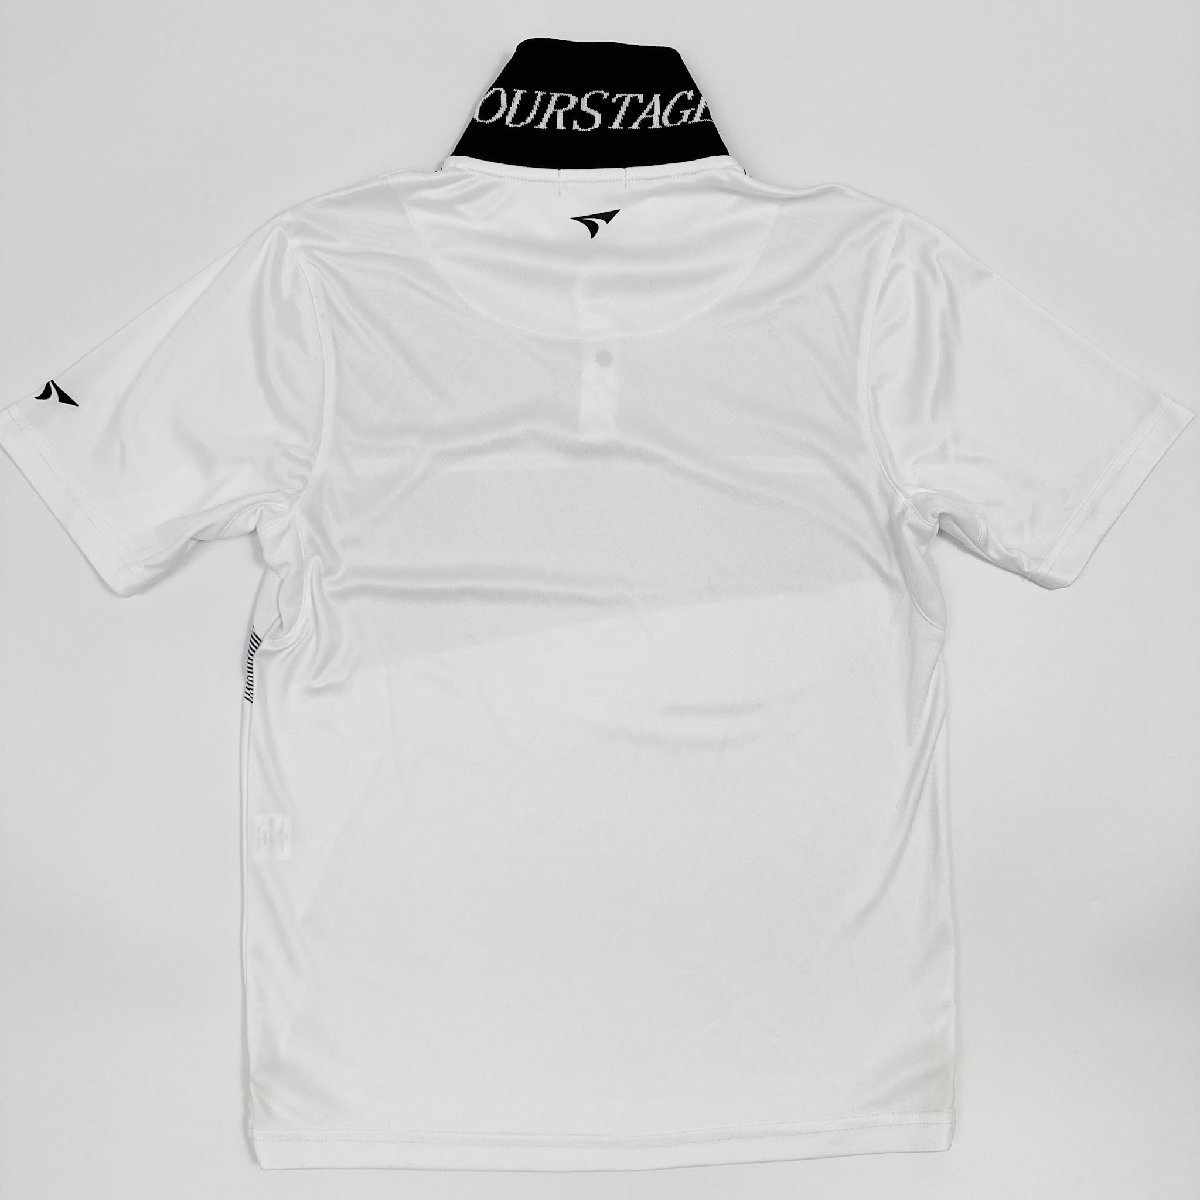 ゴルフ◇TOURSTAGE ツアーステージ ロゴ刺繍 ボーダー柄 ドライ 半袖 ポロシャツ シャツ LLサイズ /白 ホワイト /メンズ スポーツ 